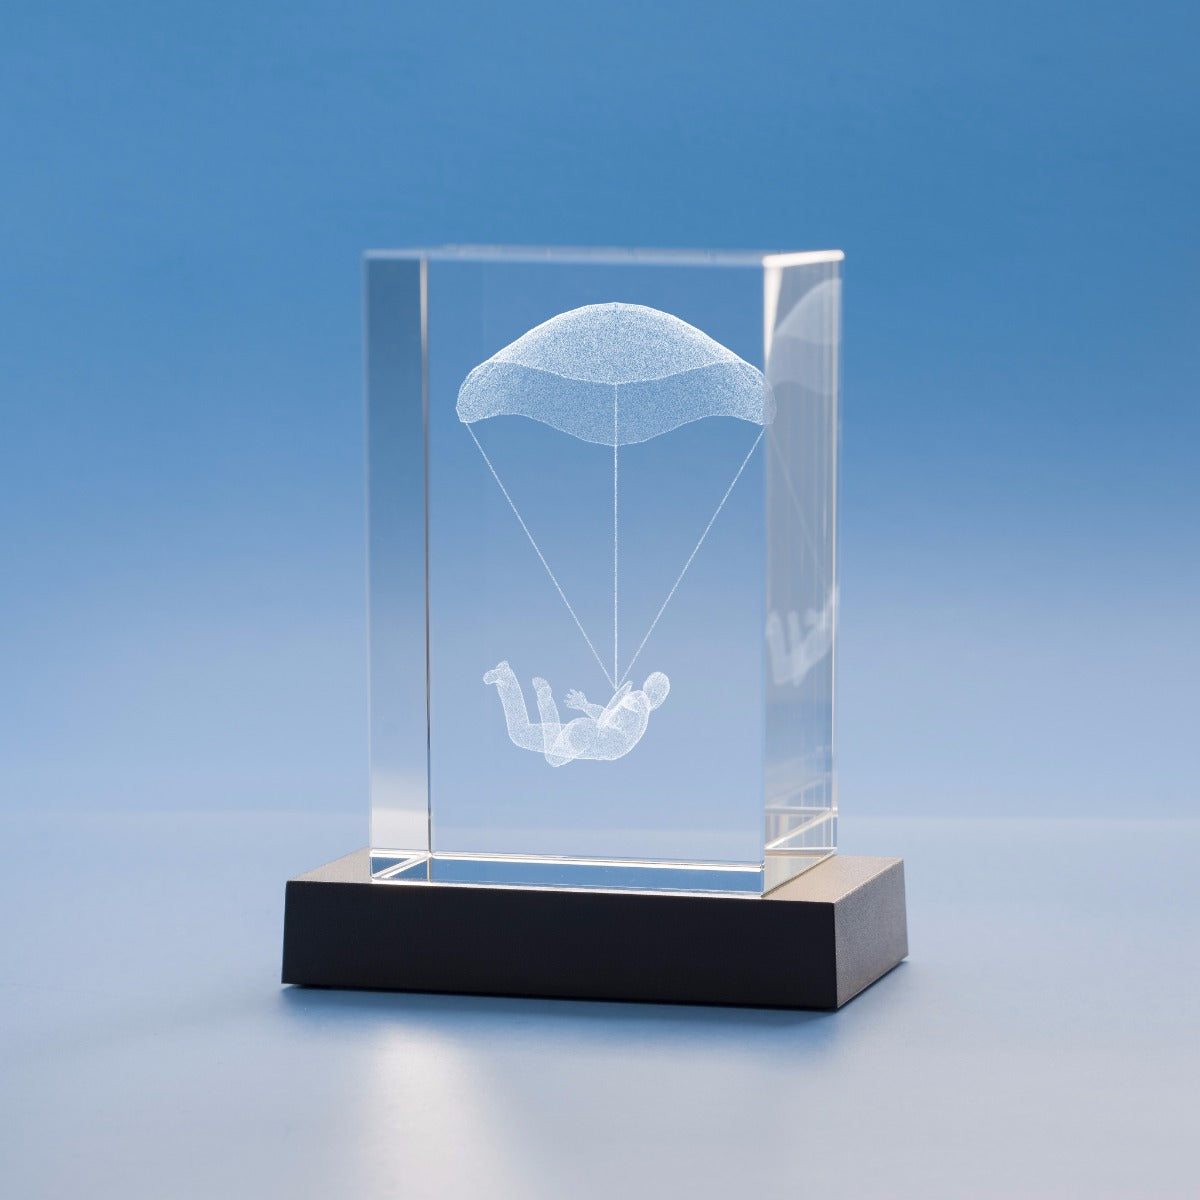 Sky Diving Hobbies Tower Crystal, 3D Engraved